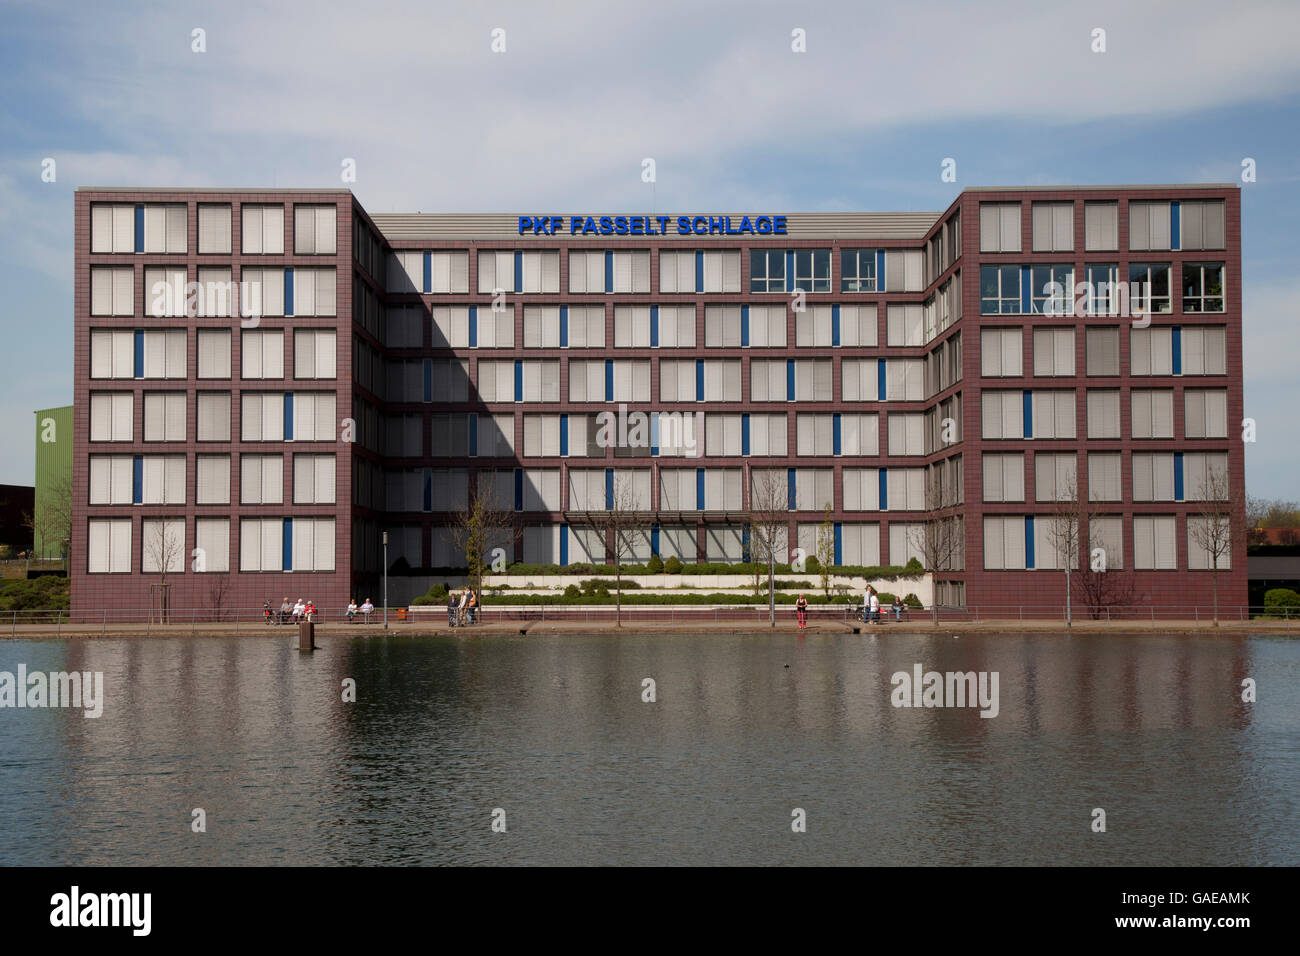 PKF Fasselt Schlage Bürogebäude, Innenhafen Hafen, Duisburg, Ruhrgebiet Bereich, North Rhine-Westphalia Stockfoto